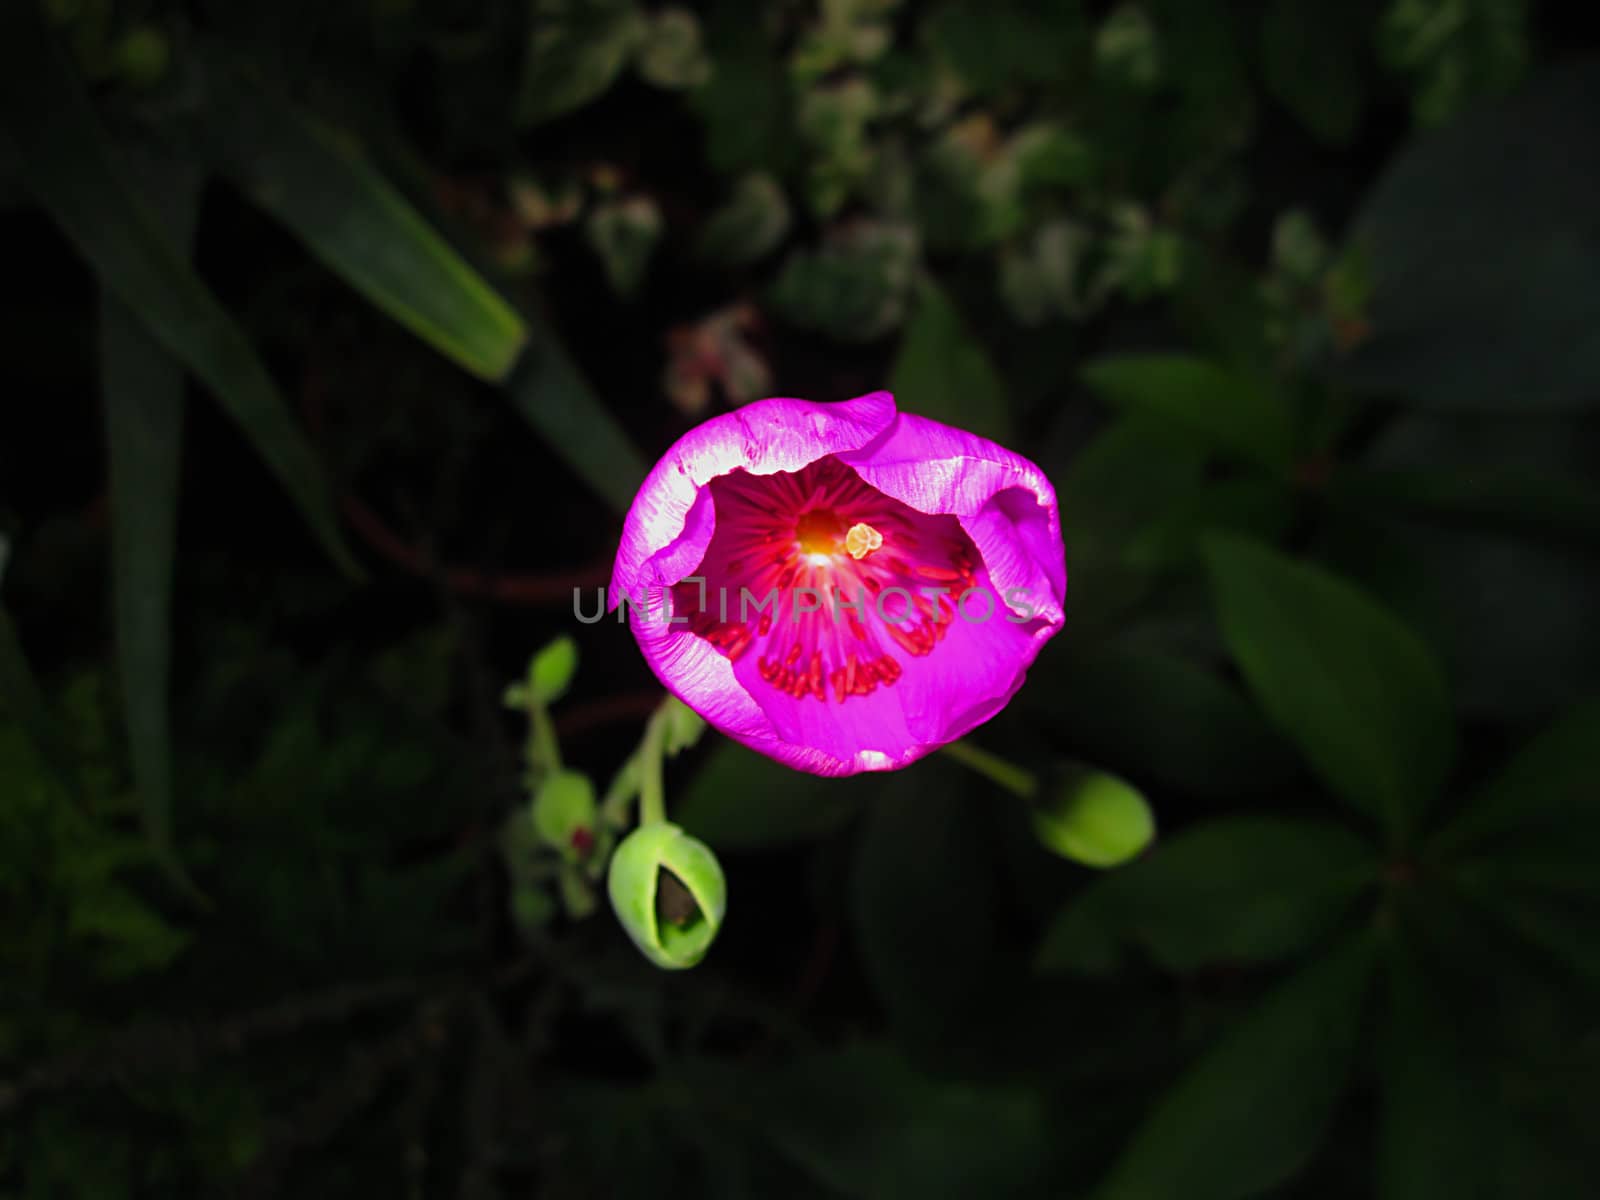 Rock Purslane Flower by llyr8